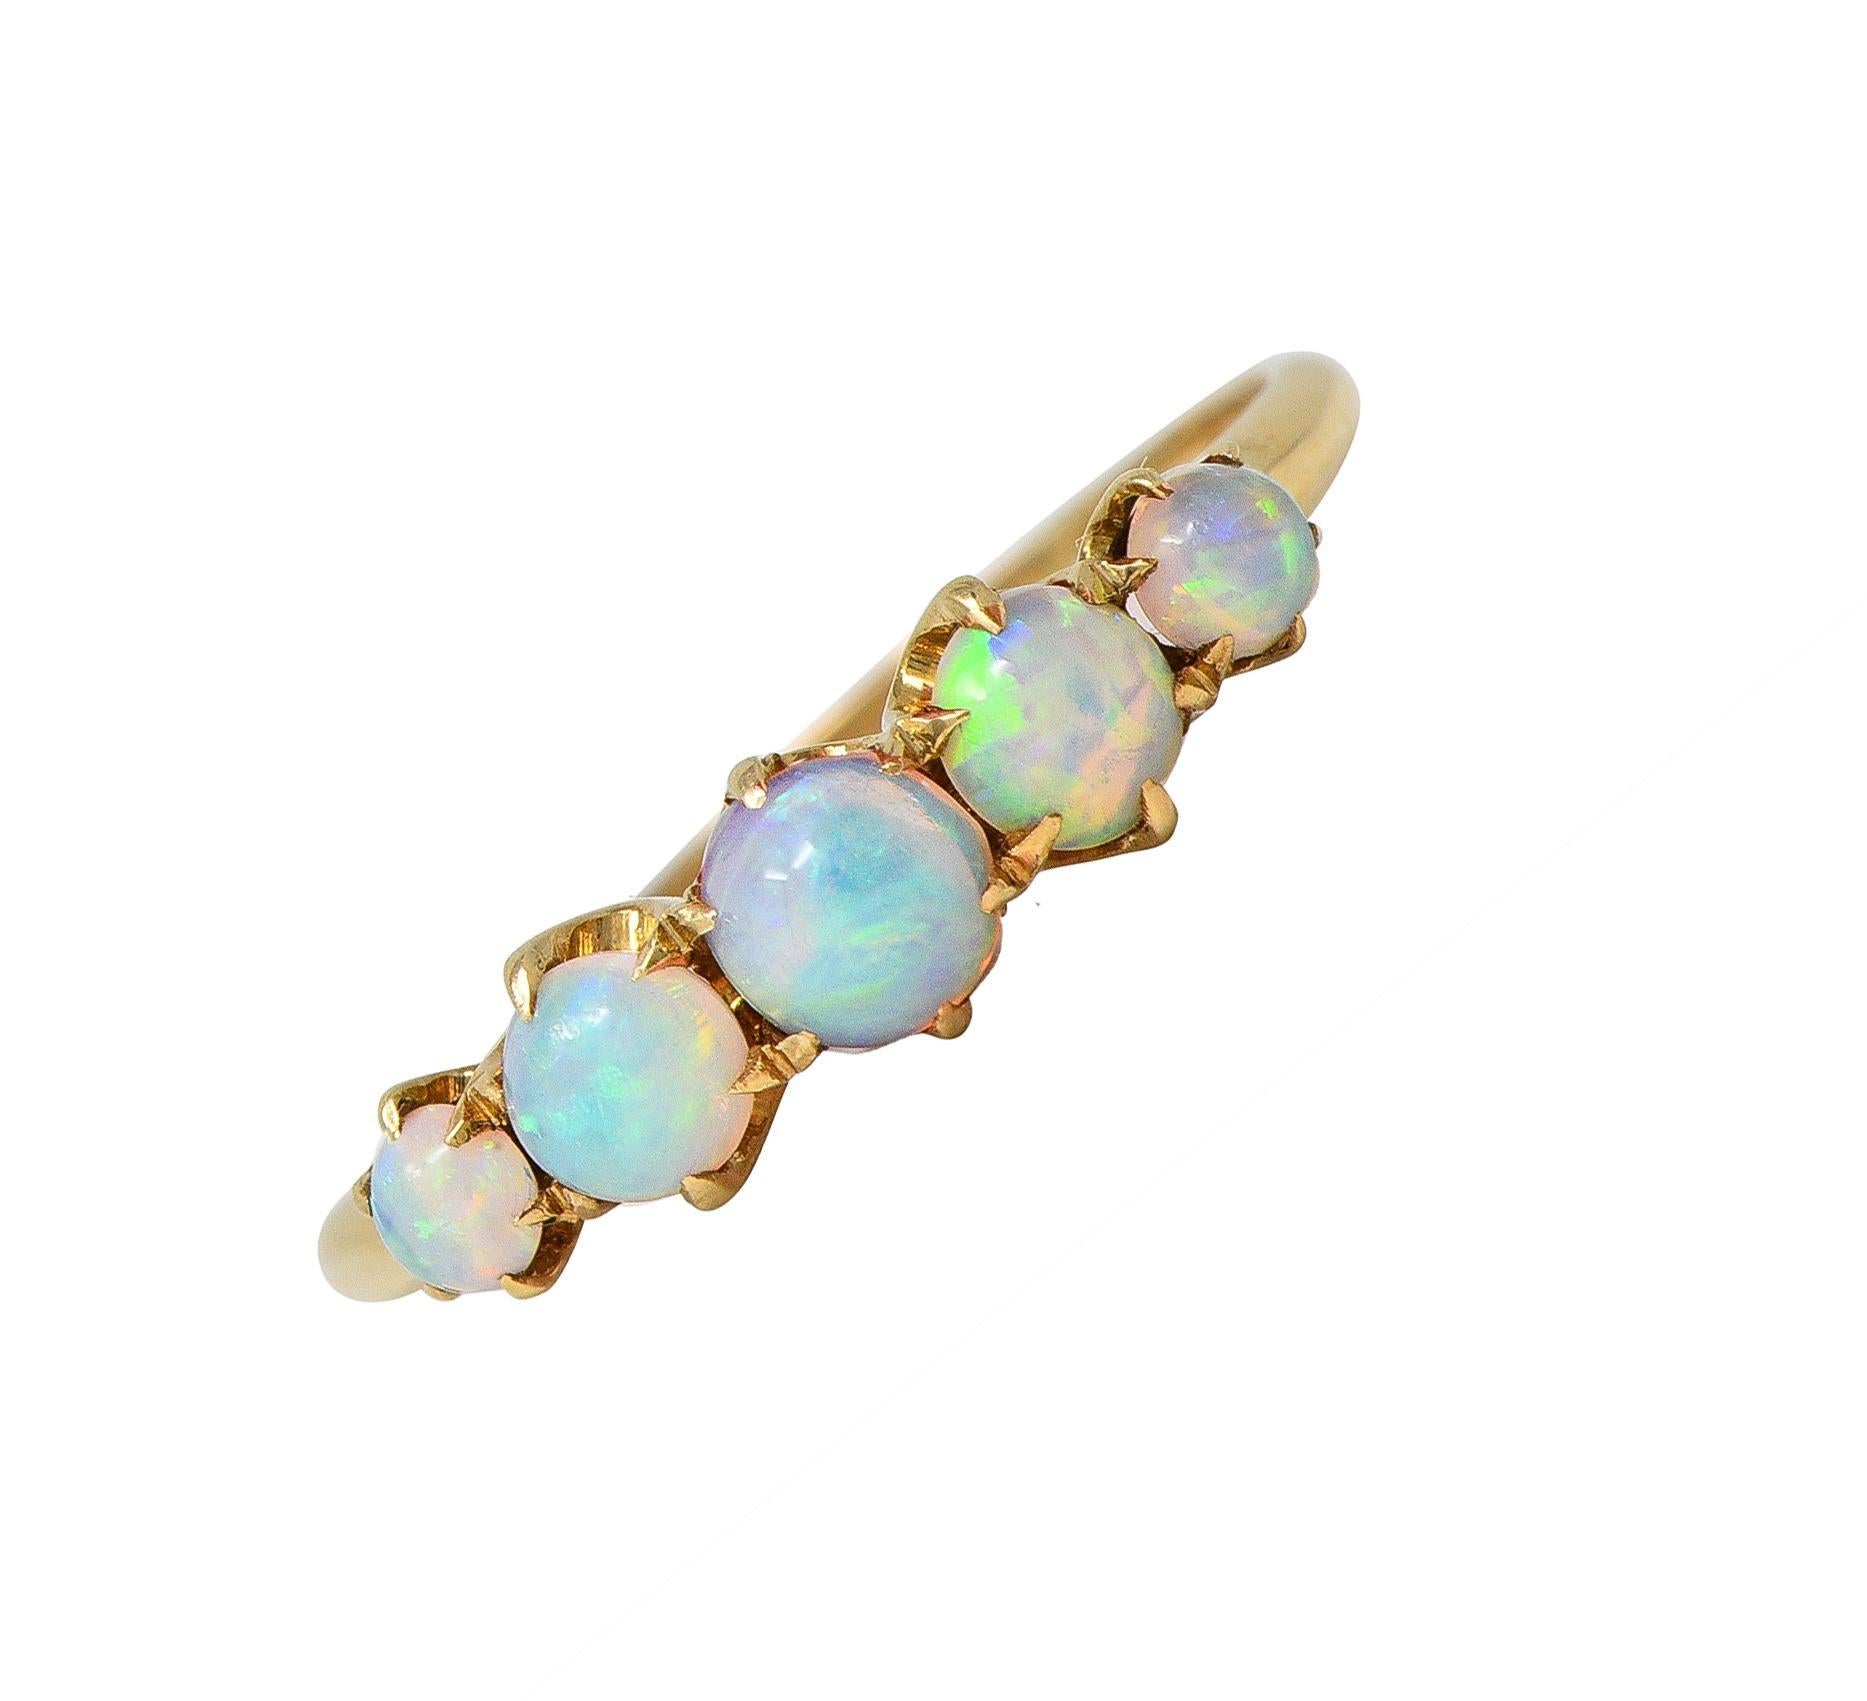 Cinq cabochons d'opale de forme ronde sont sertis d'est en ouest sur des griffes en forme de talon.
Gradués et d'une taille allant de 3,0 à 4,5 mm ronds 
Blanc translucide avec jeu de couleurs spectrales
Estampillé pour l'or 14 carats
Avec la marque